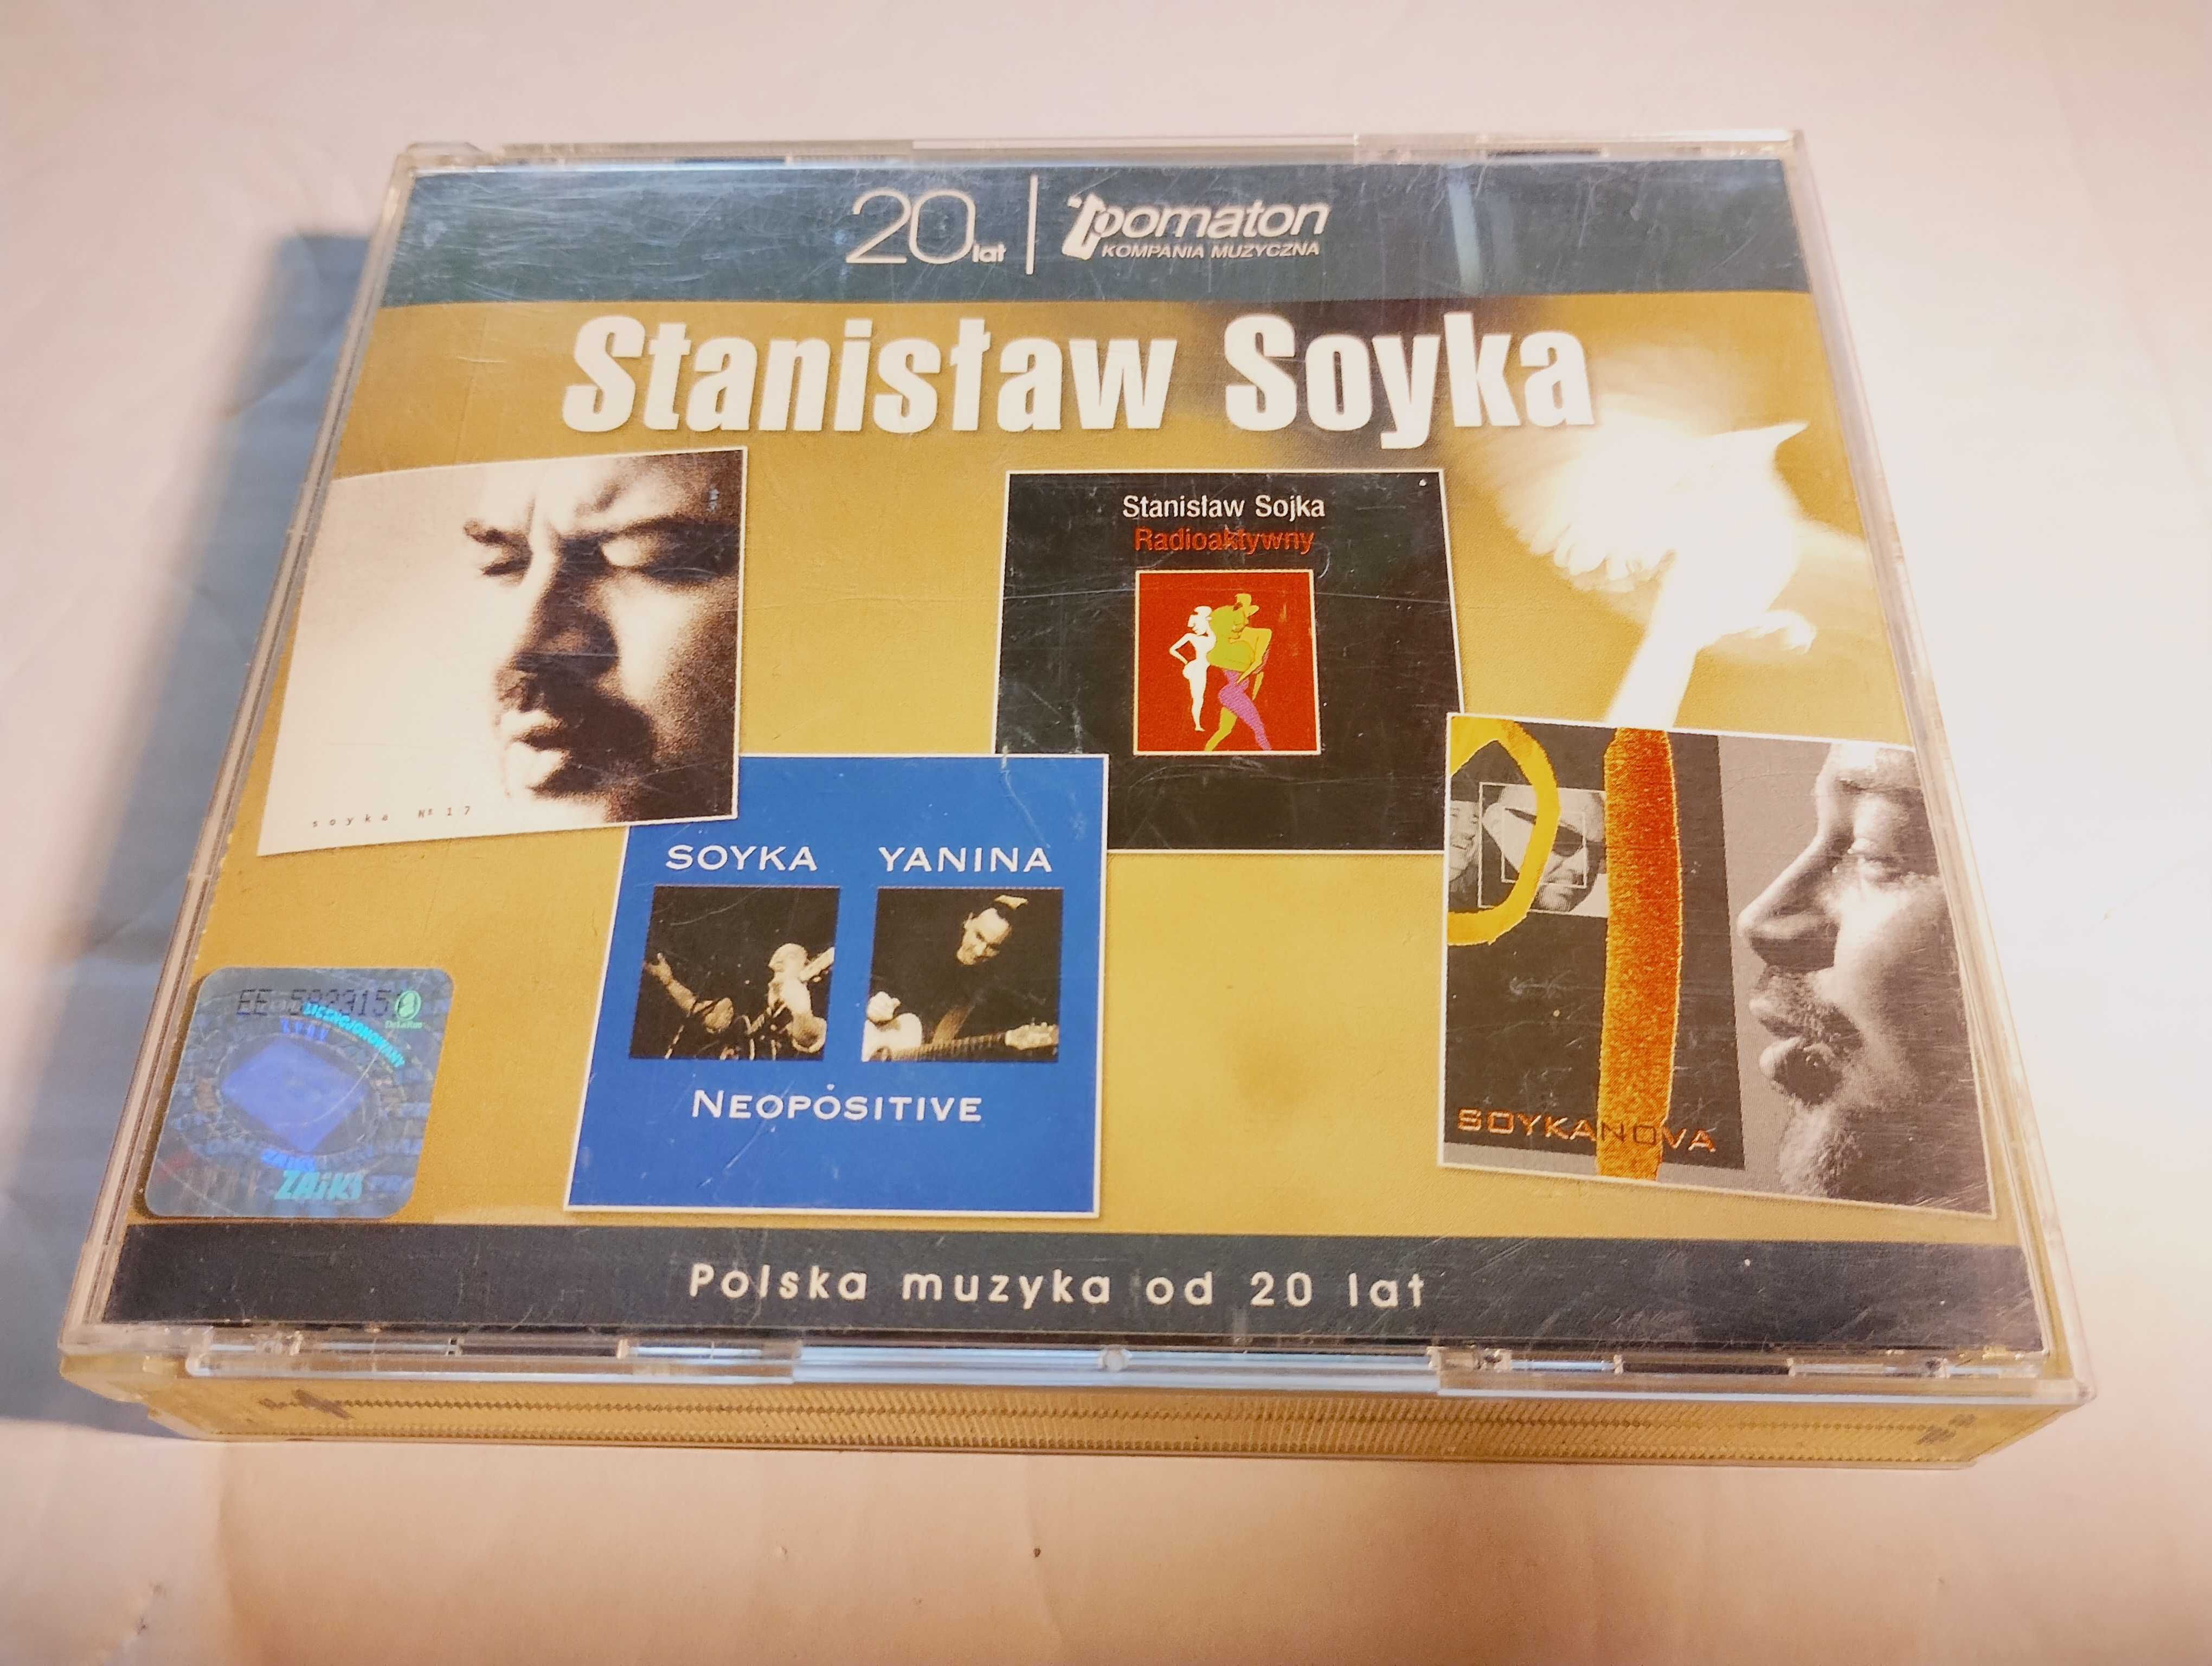 Stanisław Sojka 4 CD 20 lat Pomaton